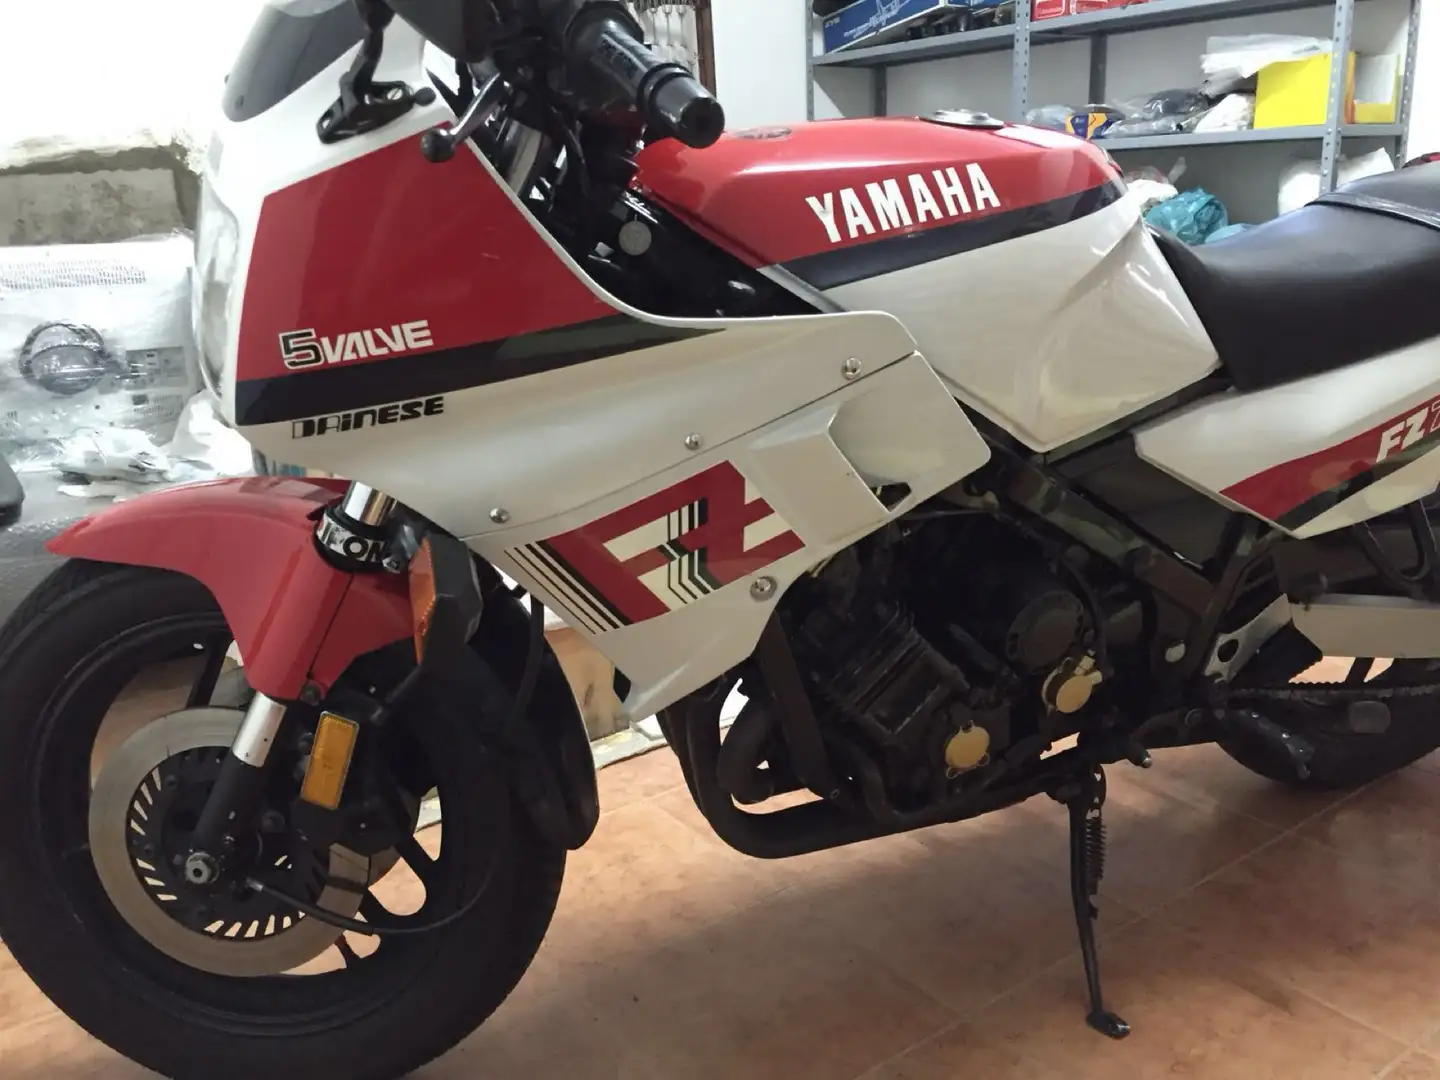 Yamaha FZ 750 immatricolazione canada colorazione bianca rossa Blanco - 1